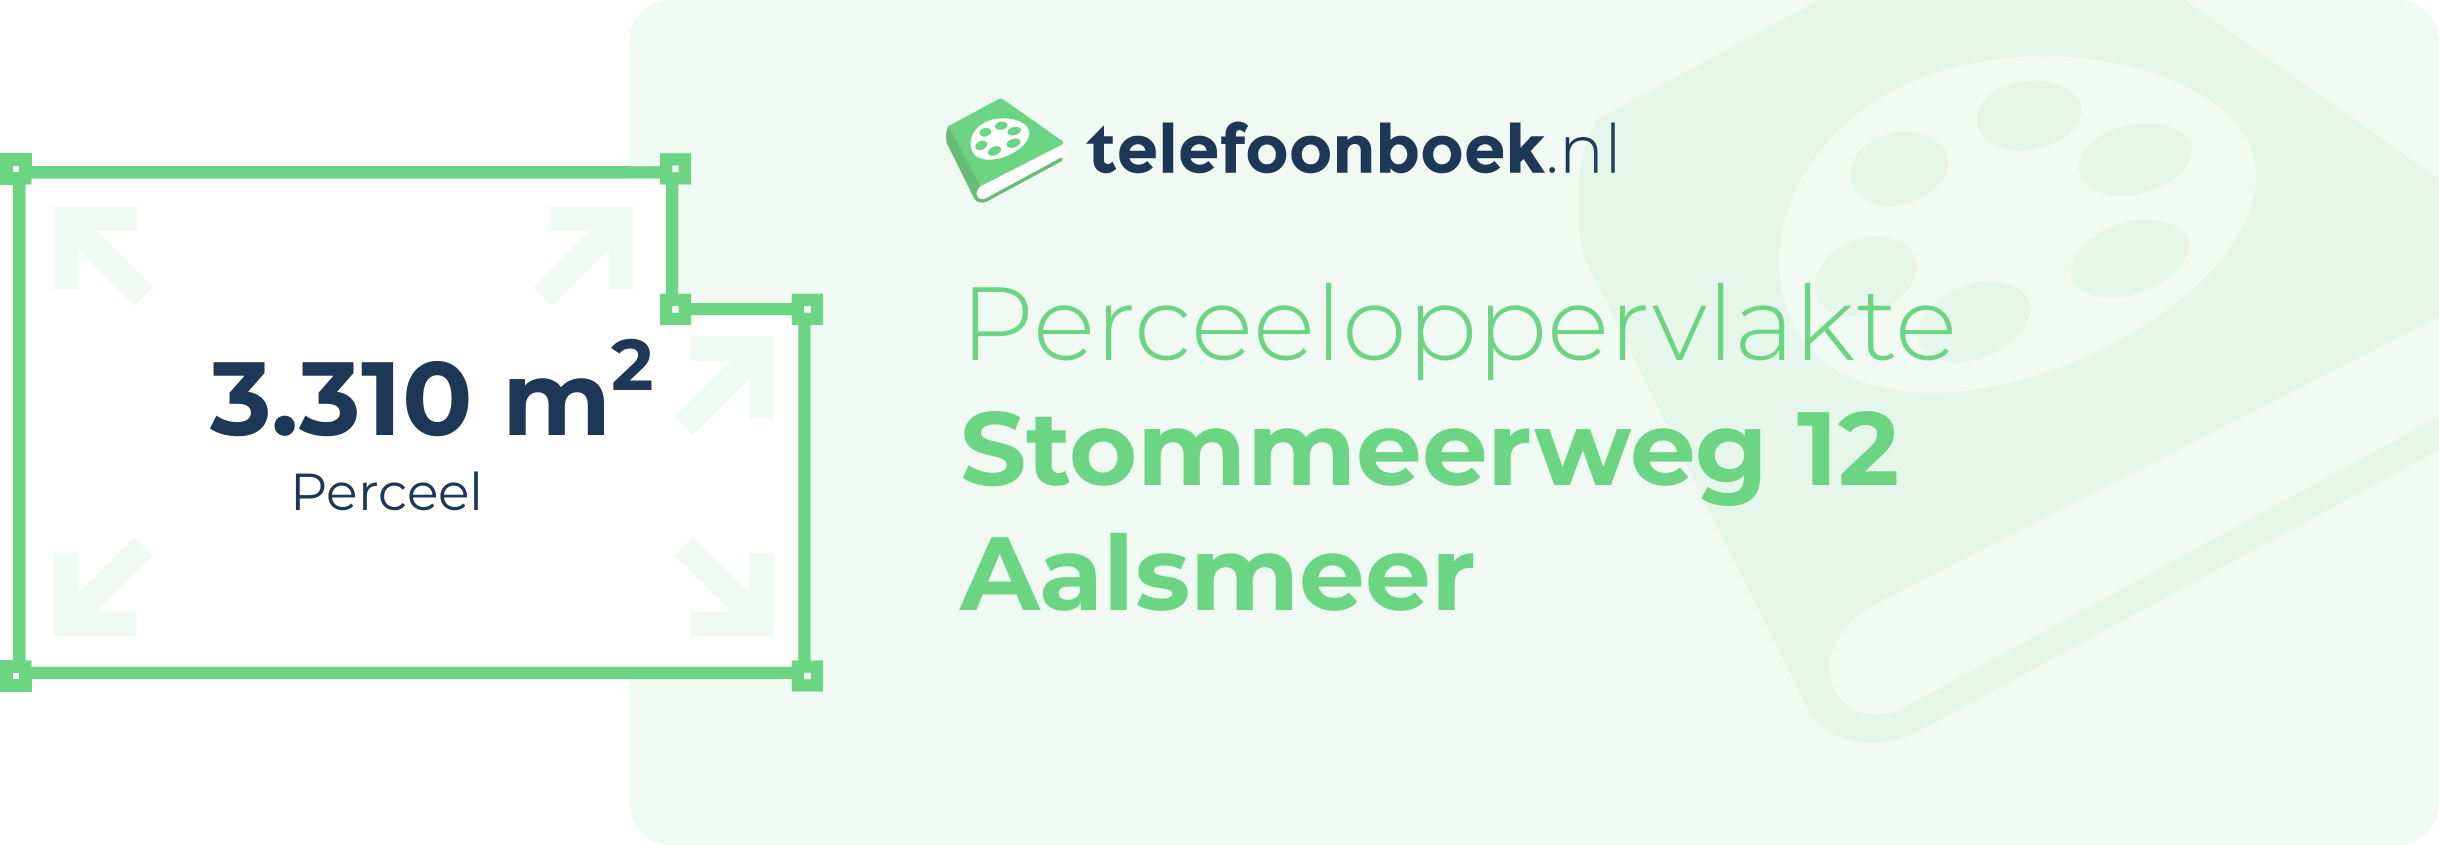 Perceeloppervlakte Stommeerweg 12 Aalsmeer